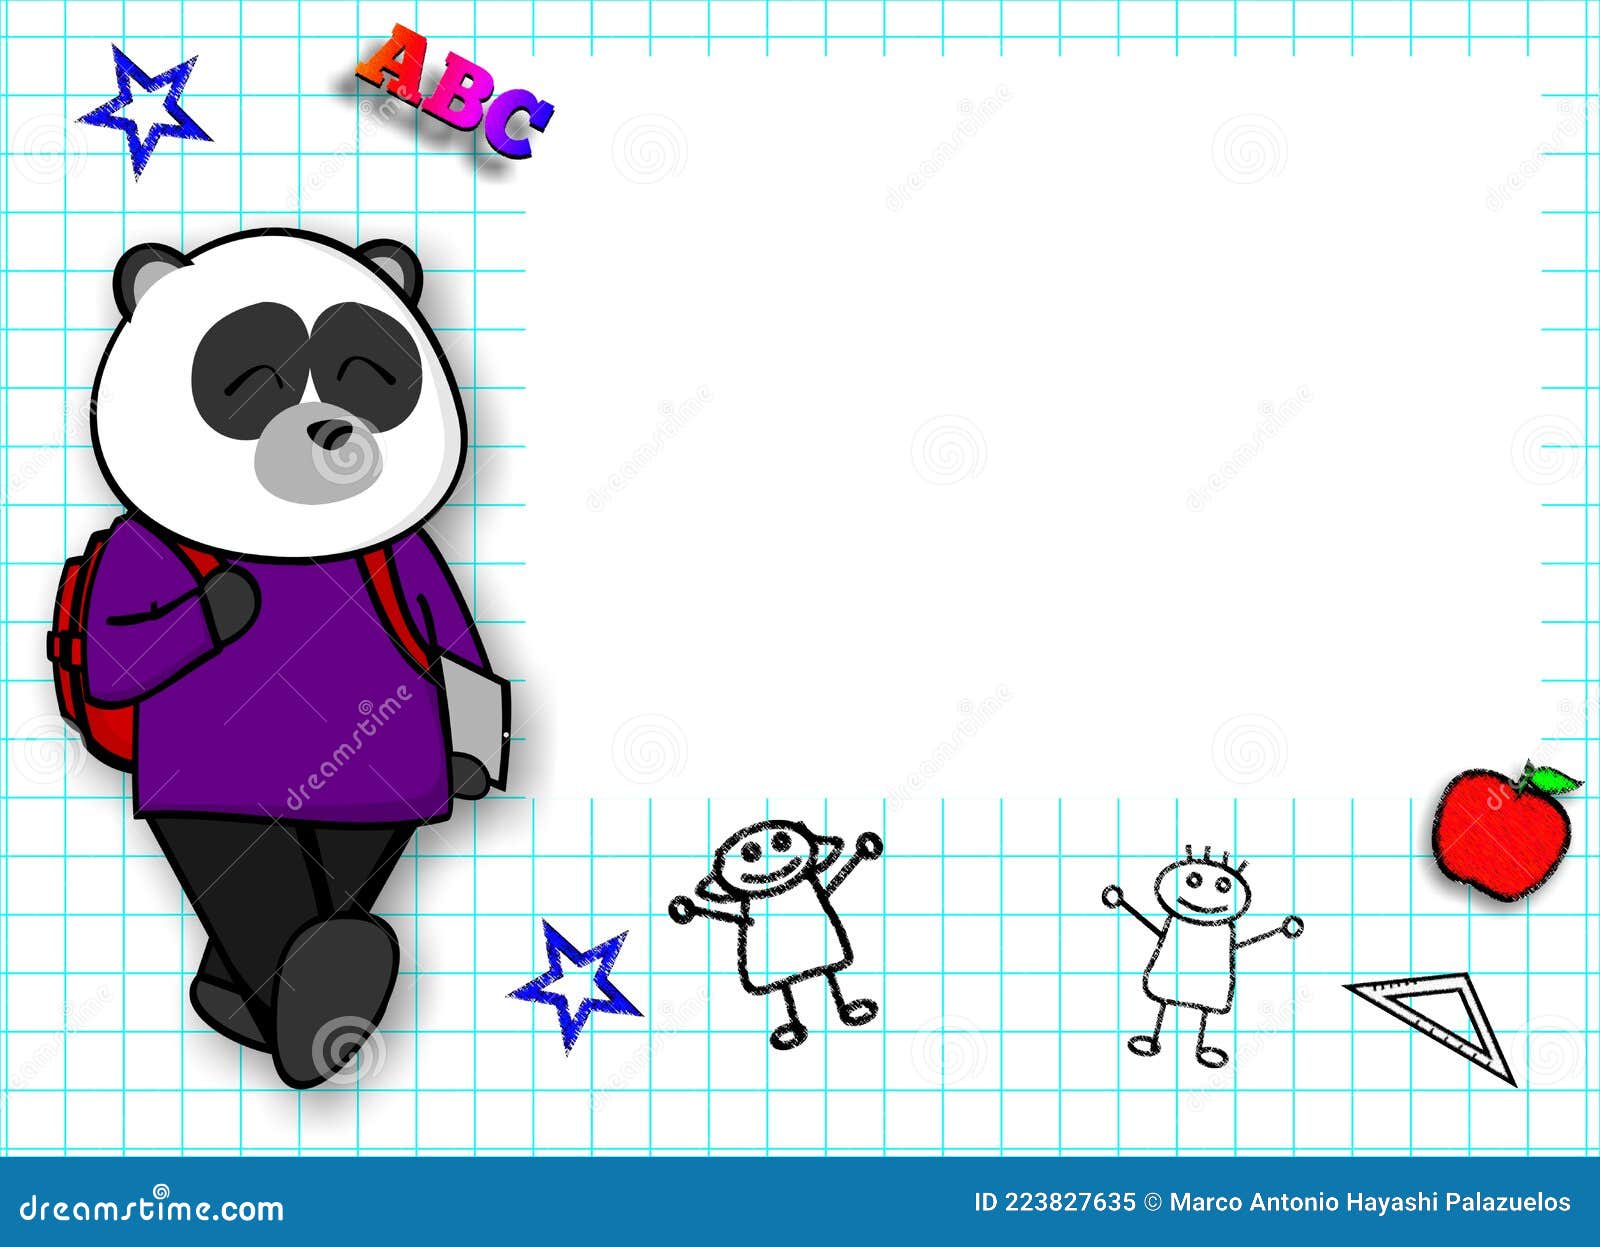 Caricatura Del Personaje Del Bebé Del Oso Panda Lindo De Vuelta a La  Escuela Stock de ilustración - Ilustración de retroceder, marco: 223827635